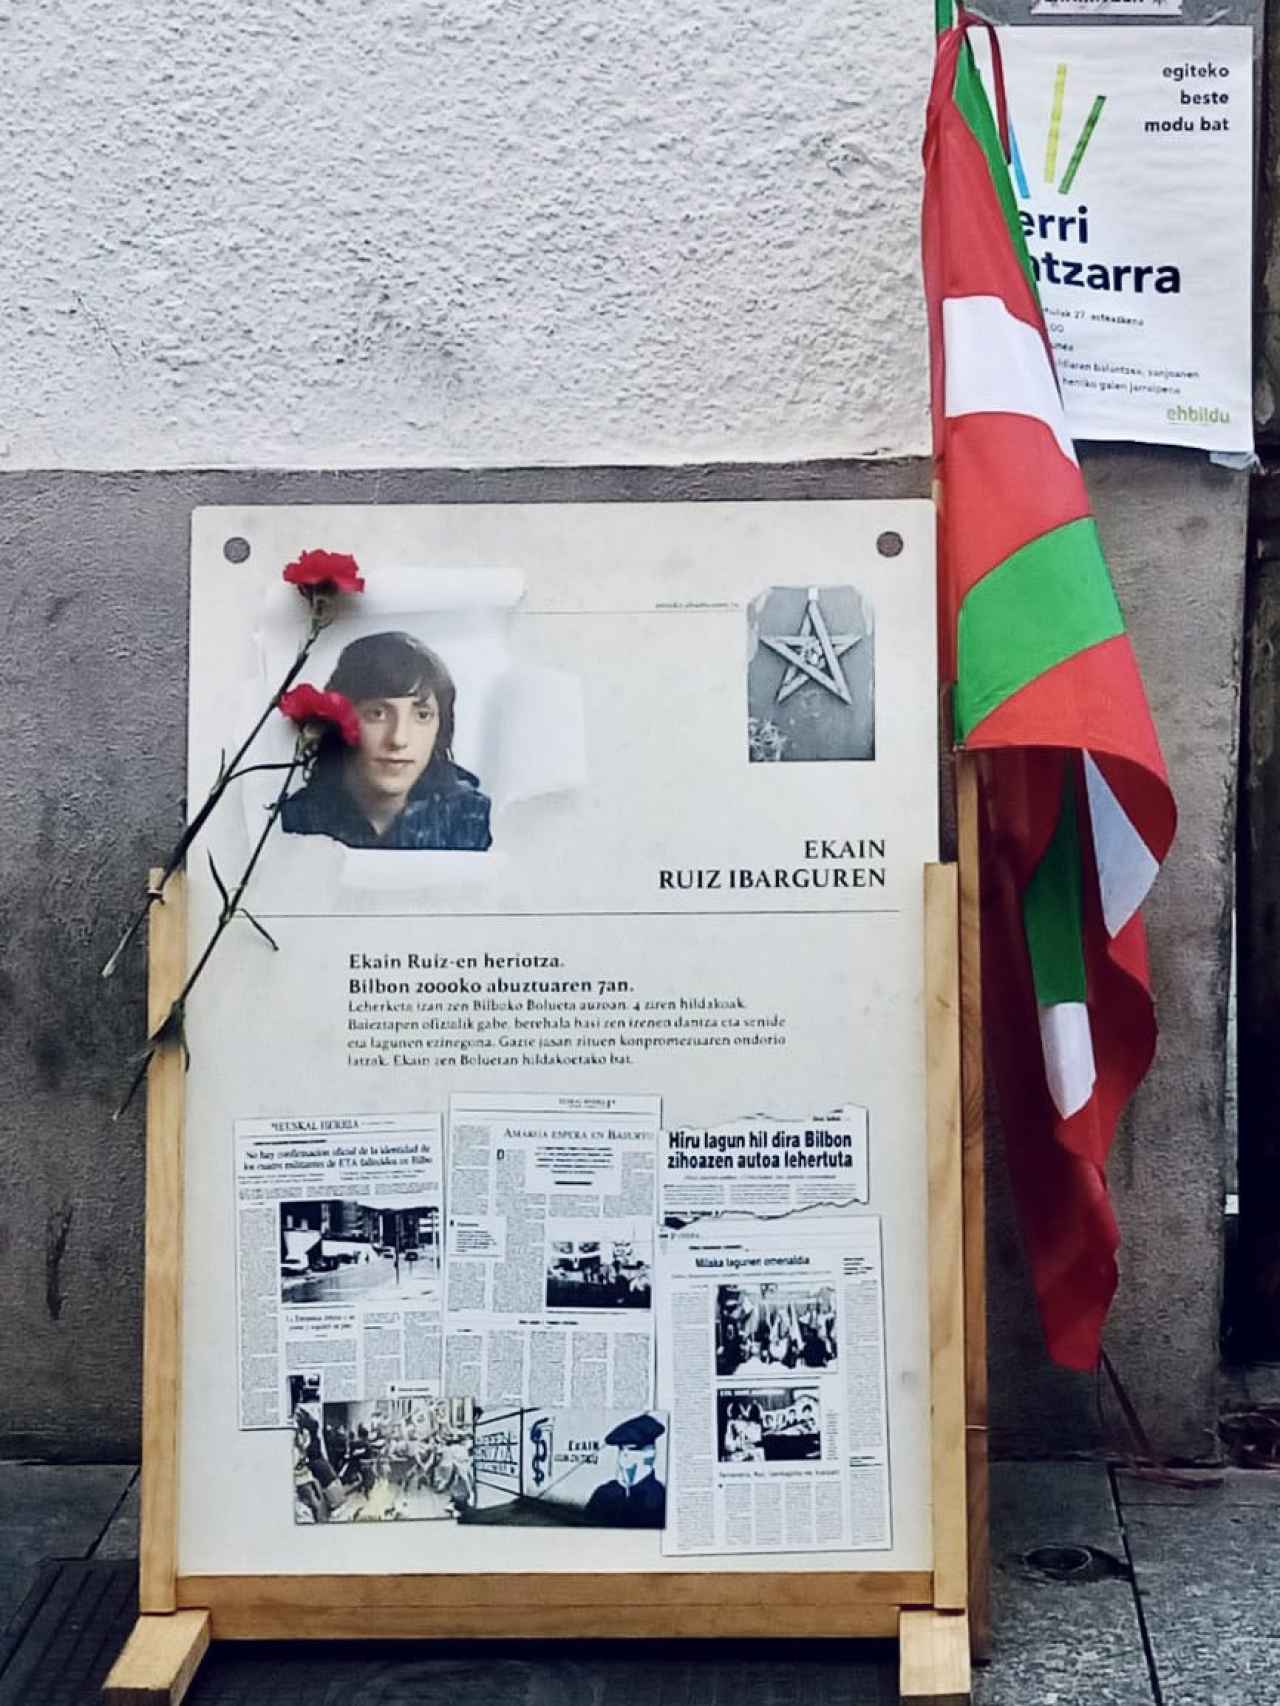 Cartel en homenaje de Sortu Hernani al etarra Ekain Ruiz / Twitter